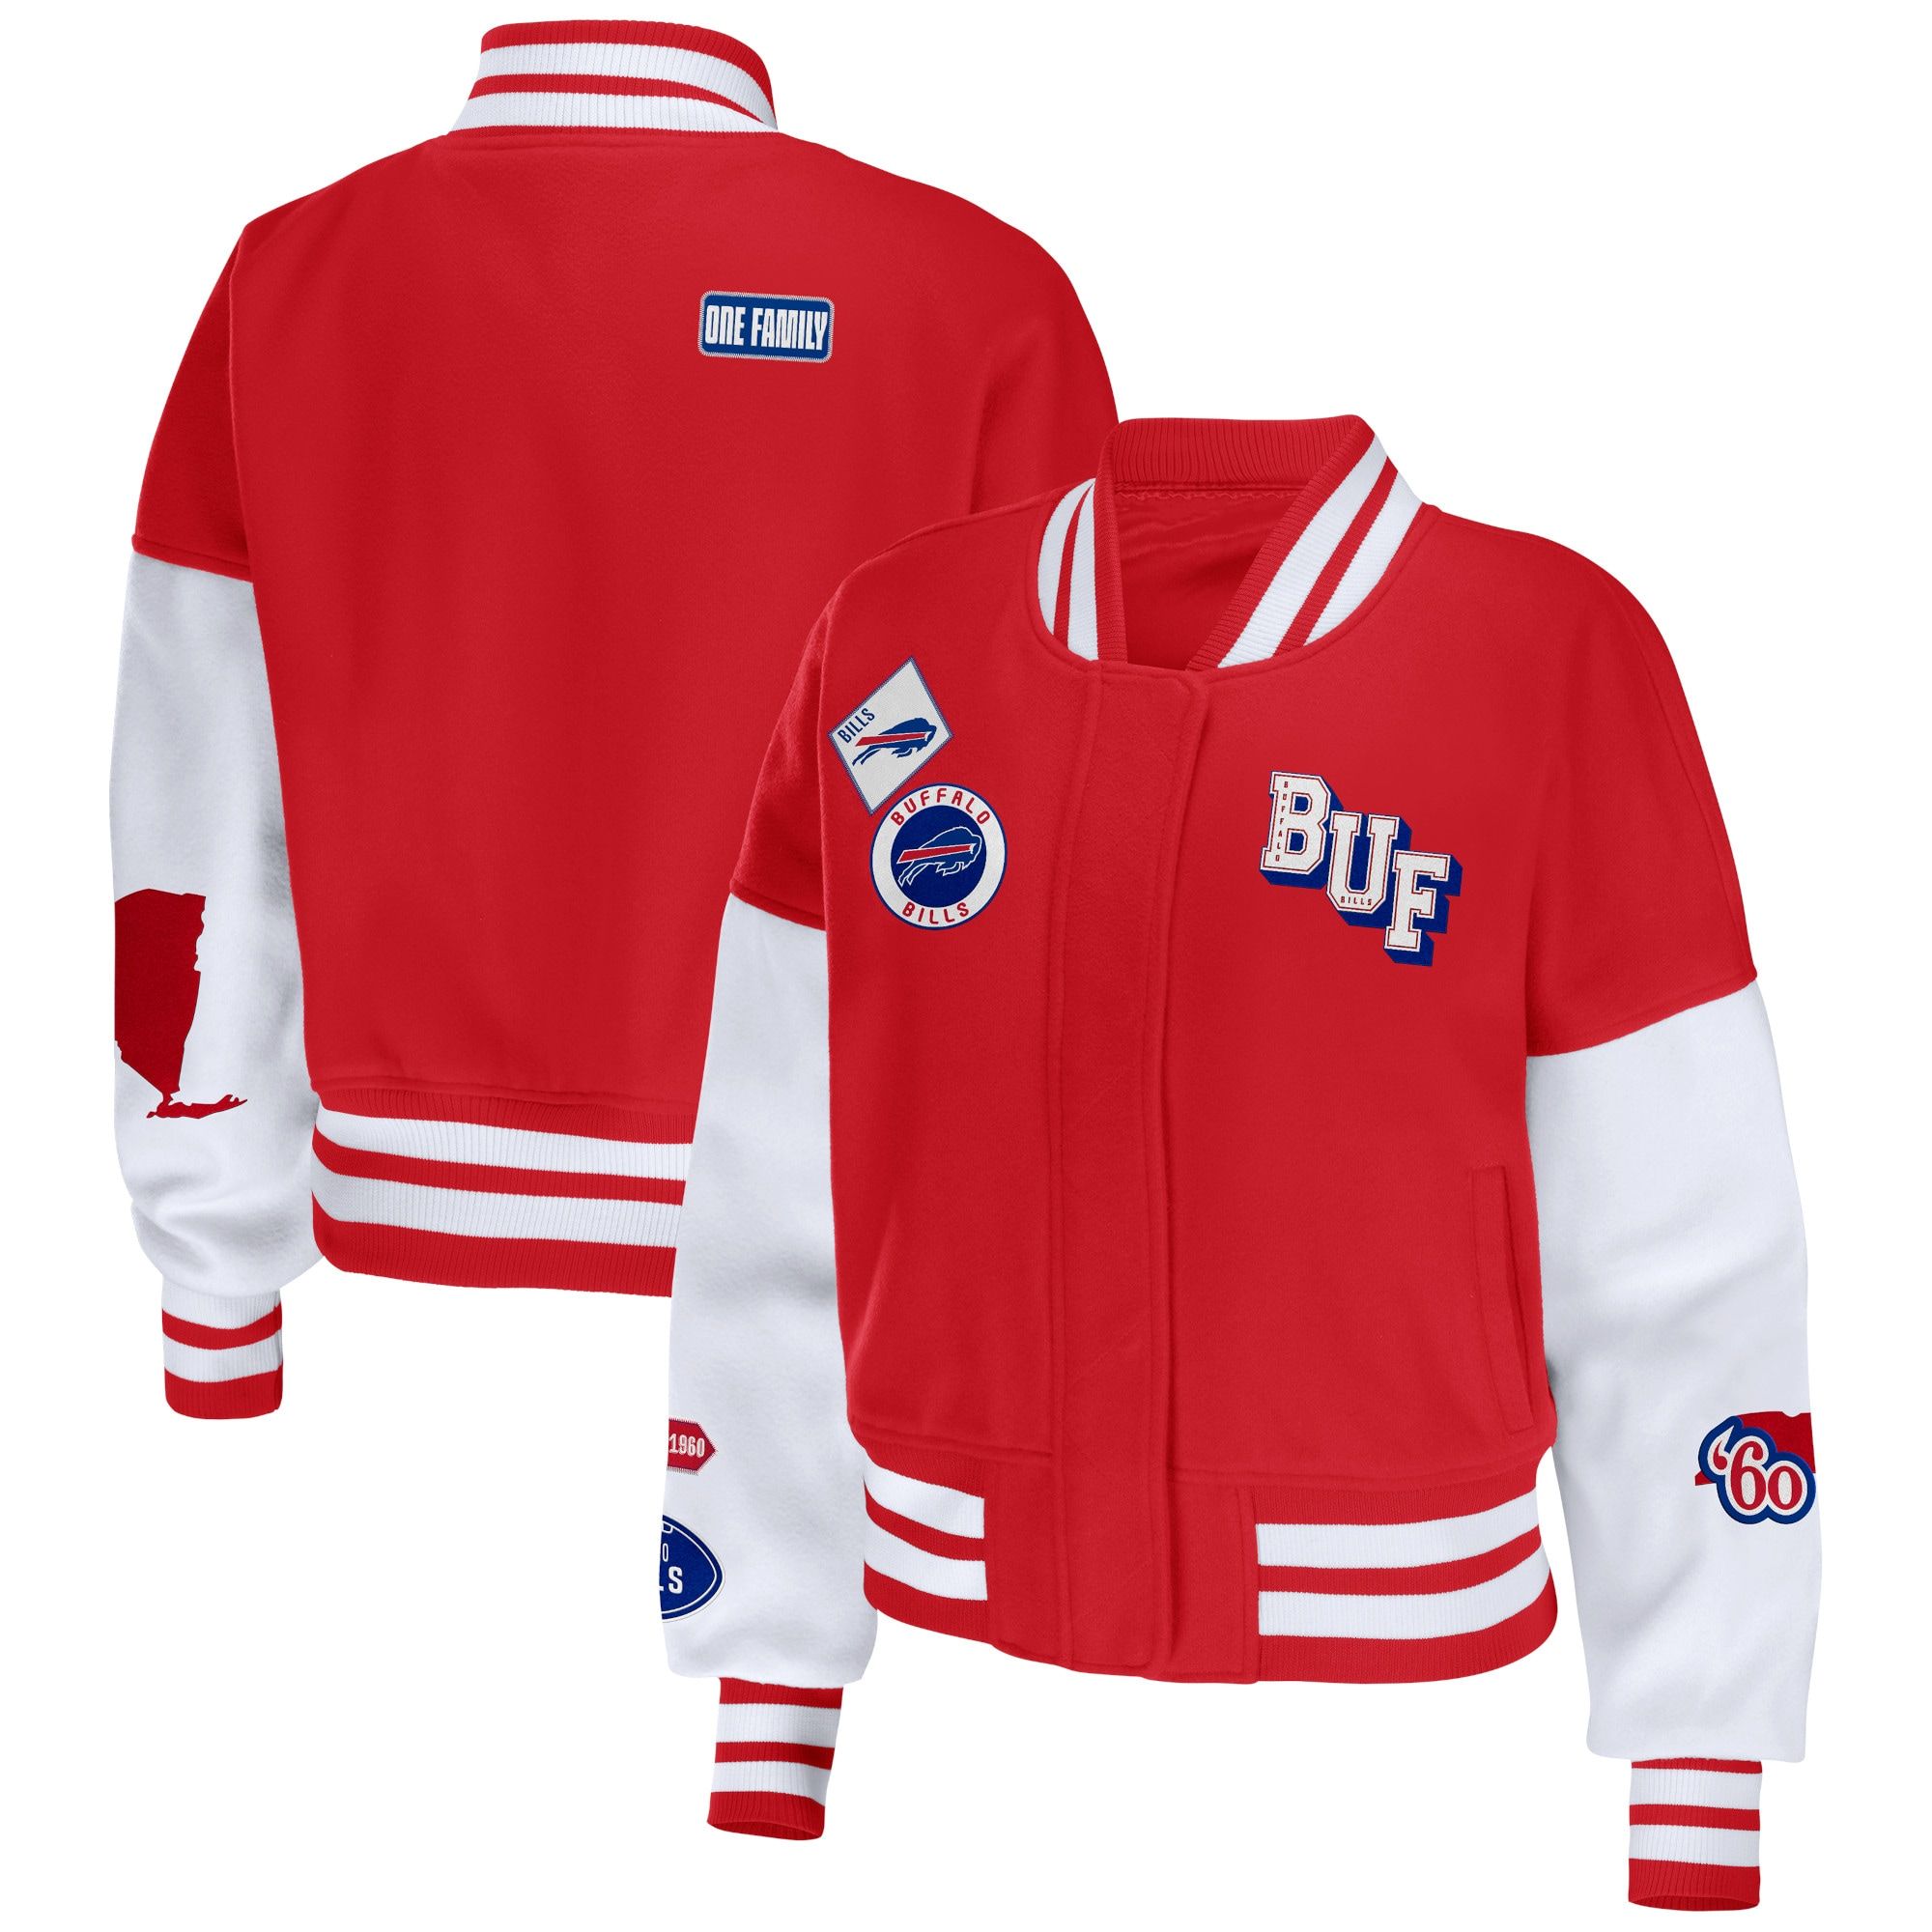 Women's Buffalo Bills WEAR by Erin Andrews Red/White Full-Zip Varsity Jacket | NFL Shop